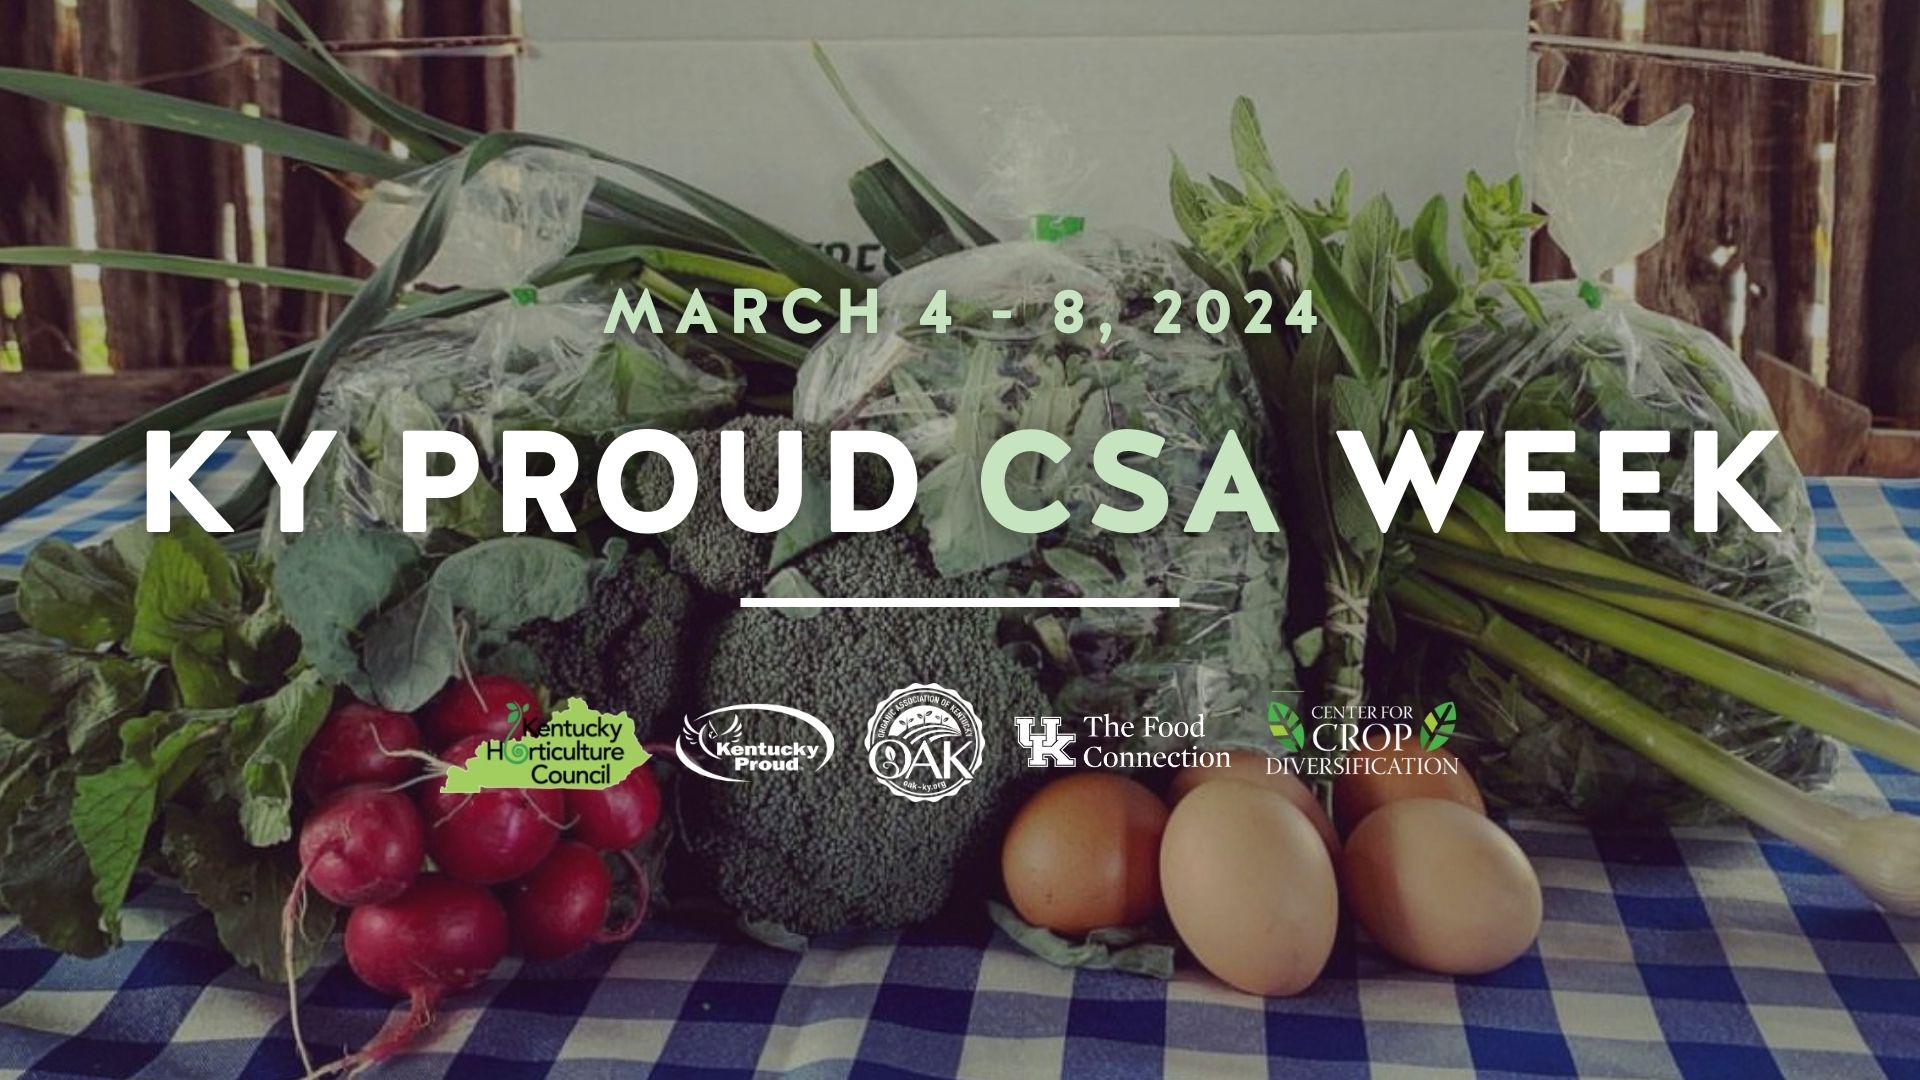 Kentucky Proud® CSA Week highlights